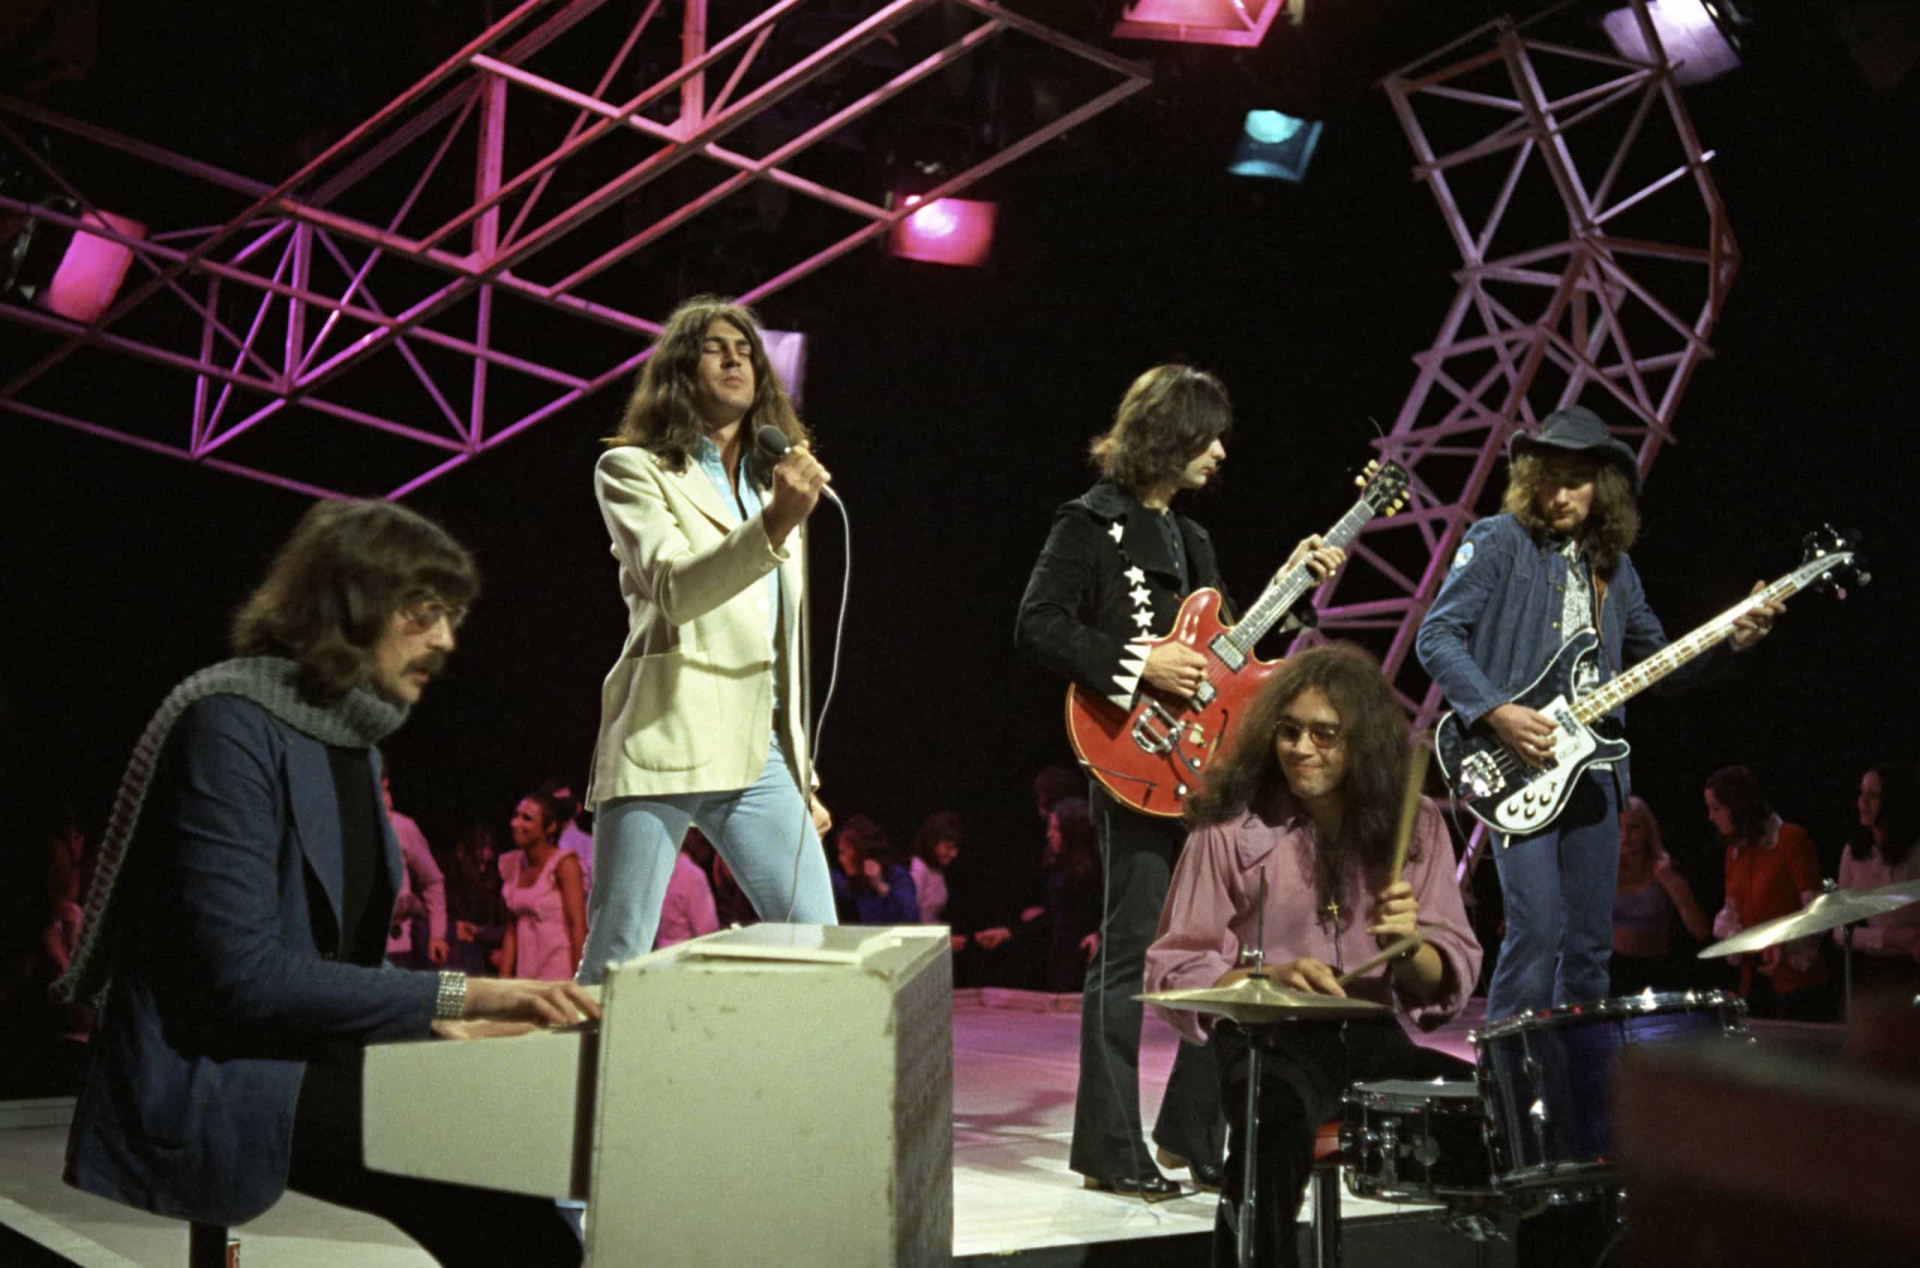 <p>Ursprünglich als Psychedelic- und Progressive-Rock-Band gegründet, schienen Deep Purple mit ihrem bahnbrechenden Auftritt 1969 in der Royal Albert Hall in London, der als Live-Album "Concerto for Group and Orchestra" aufgenommen und veröffentlicht wurde, ihre Progrock-Qualitäten zu festigen. Im folgenden Jahr jedoch wechselten sie mit ihrem 1970er Album "Deep Purple in Rock" zu einem härteren Sound und wurden zu einem der Pioniere des Heavy Metal.</p>